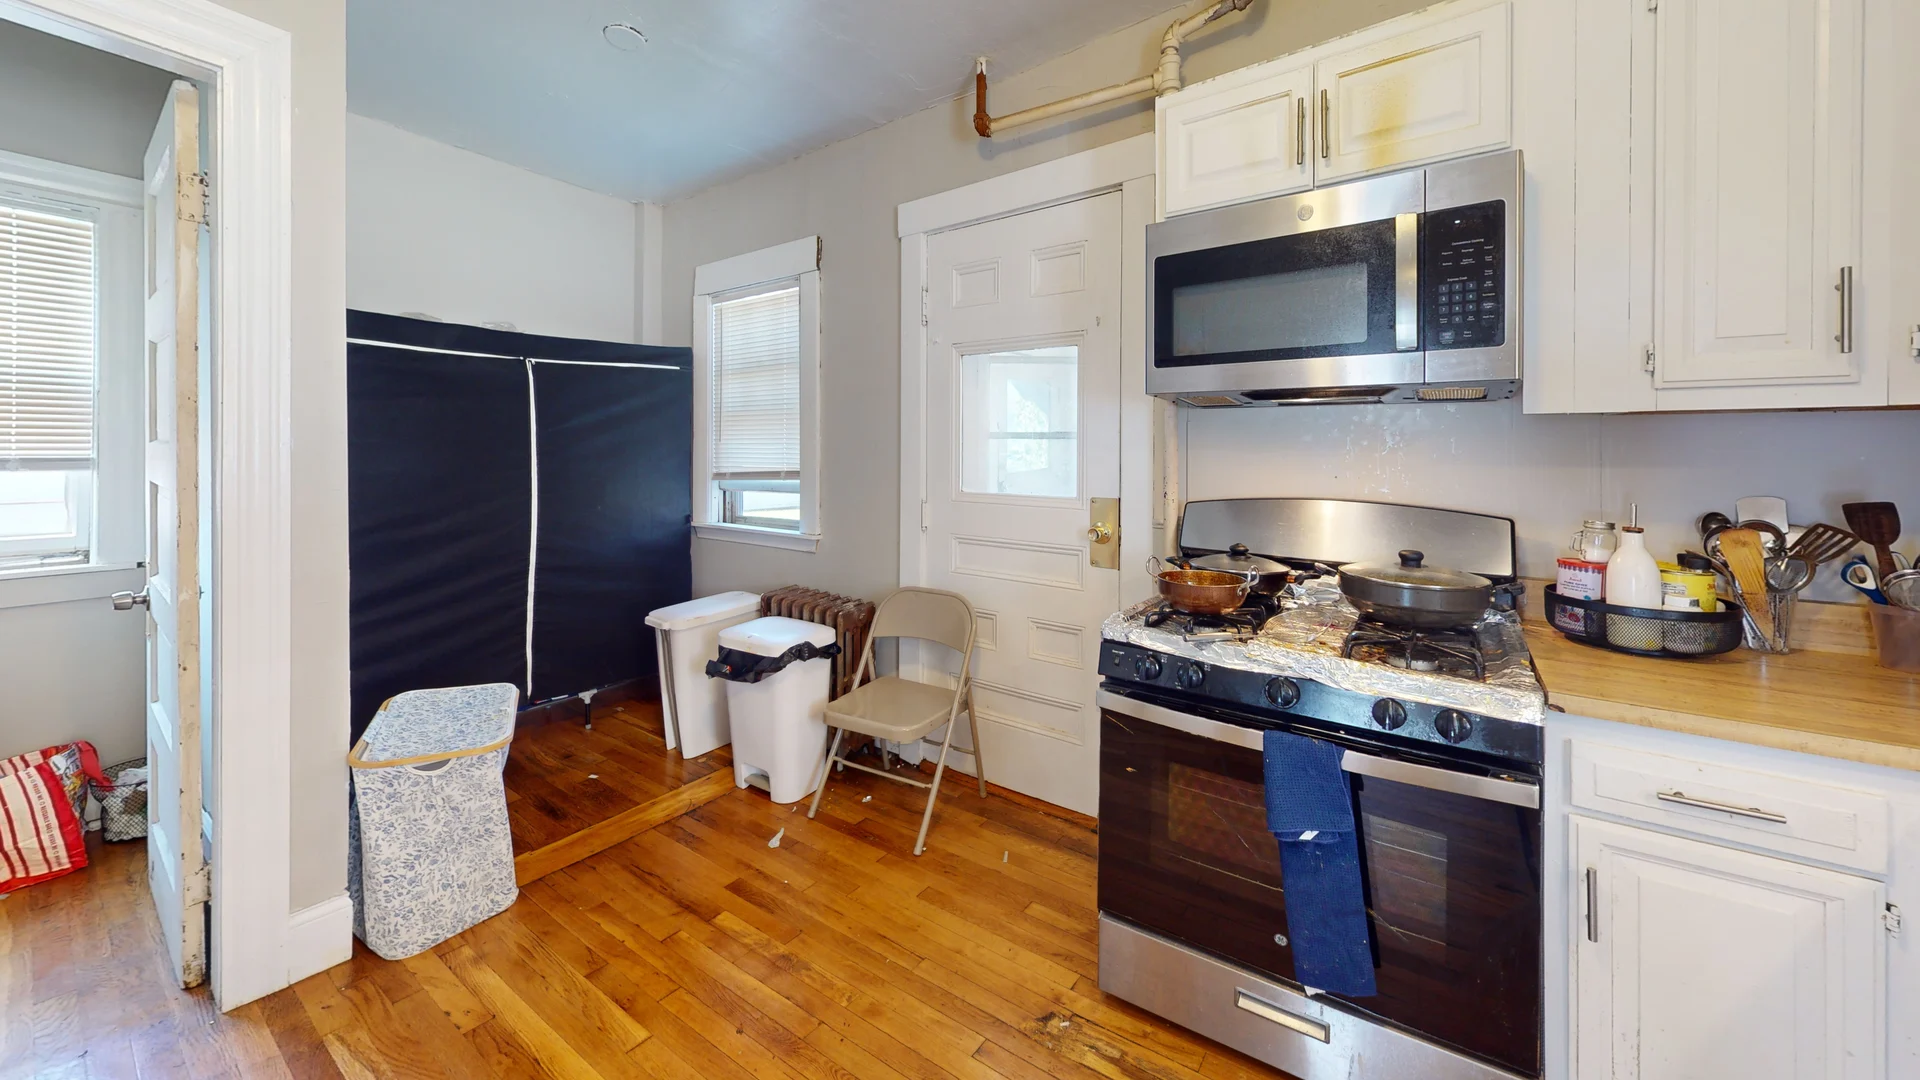 Photos of apartment on Bronsdon St.,Boston MA 02135